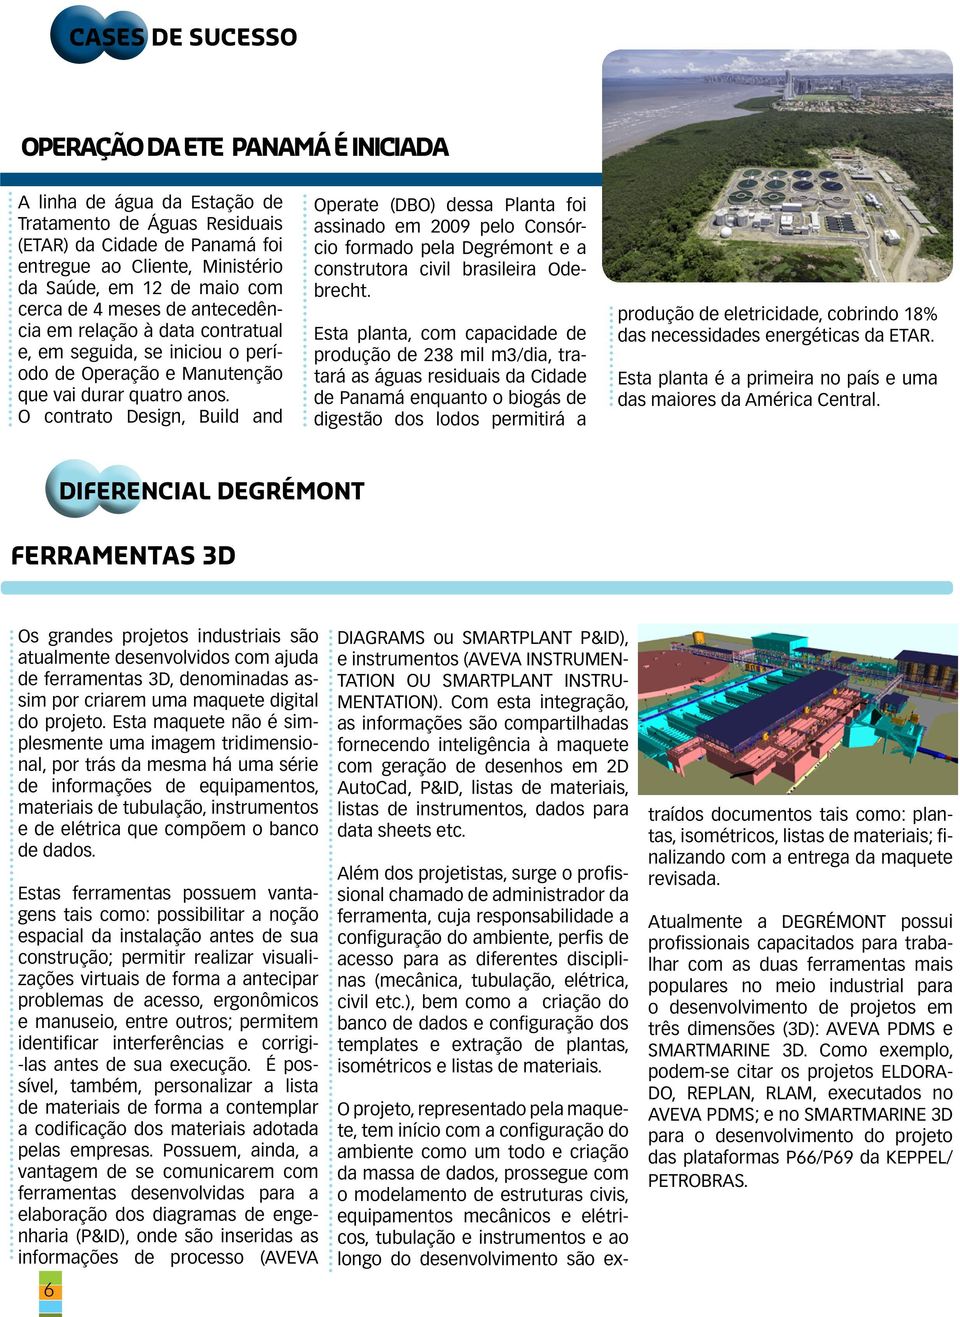 O contrato Design, Build and Operate (DBO) dessa Planta foi assinado em 2009 pelo Consórcio formado pela Degrémont e a construtora civil brasileira Odebrecht.